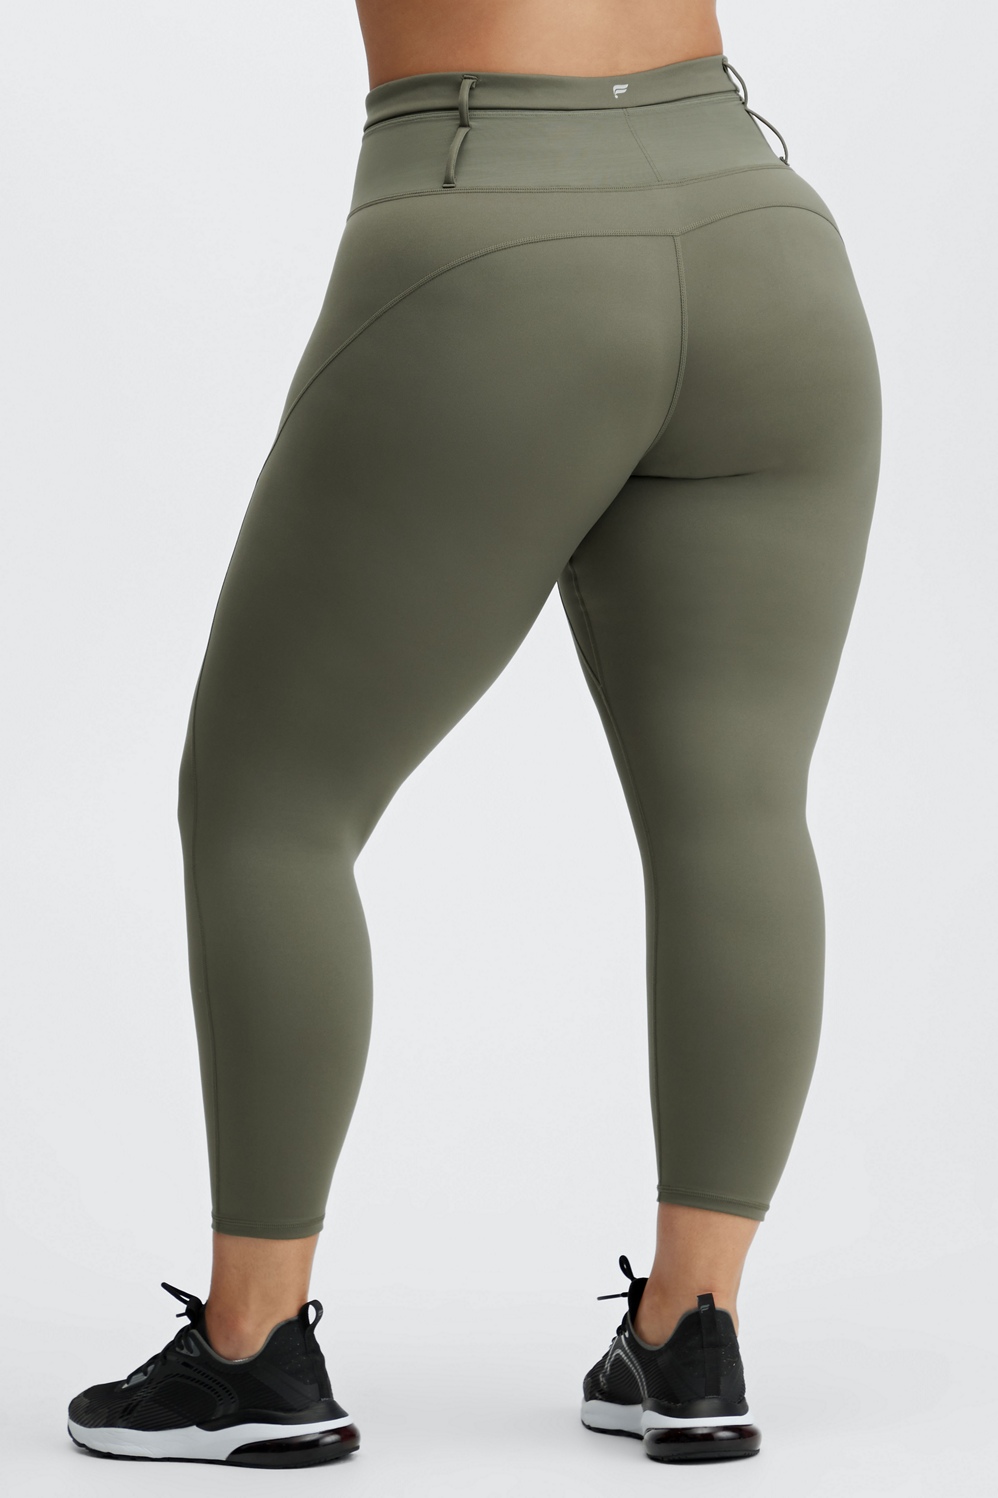 Women's Flex High-Rise 7/8 Leggings - All in Motion Olive Green